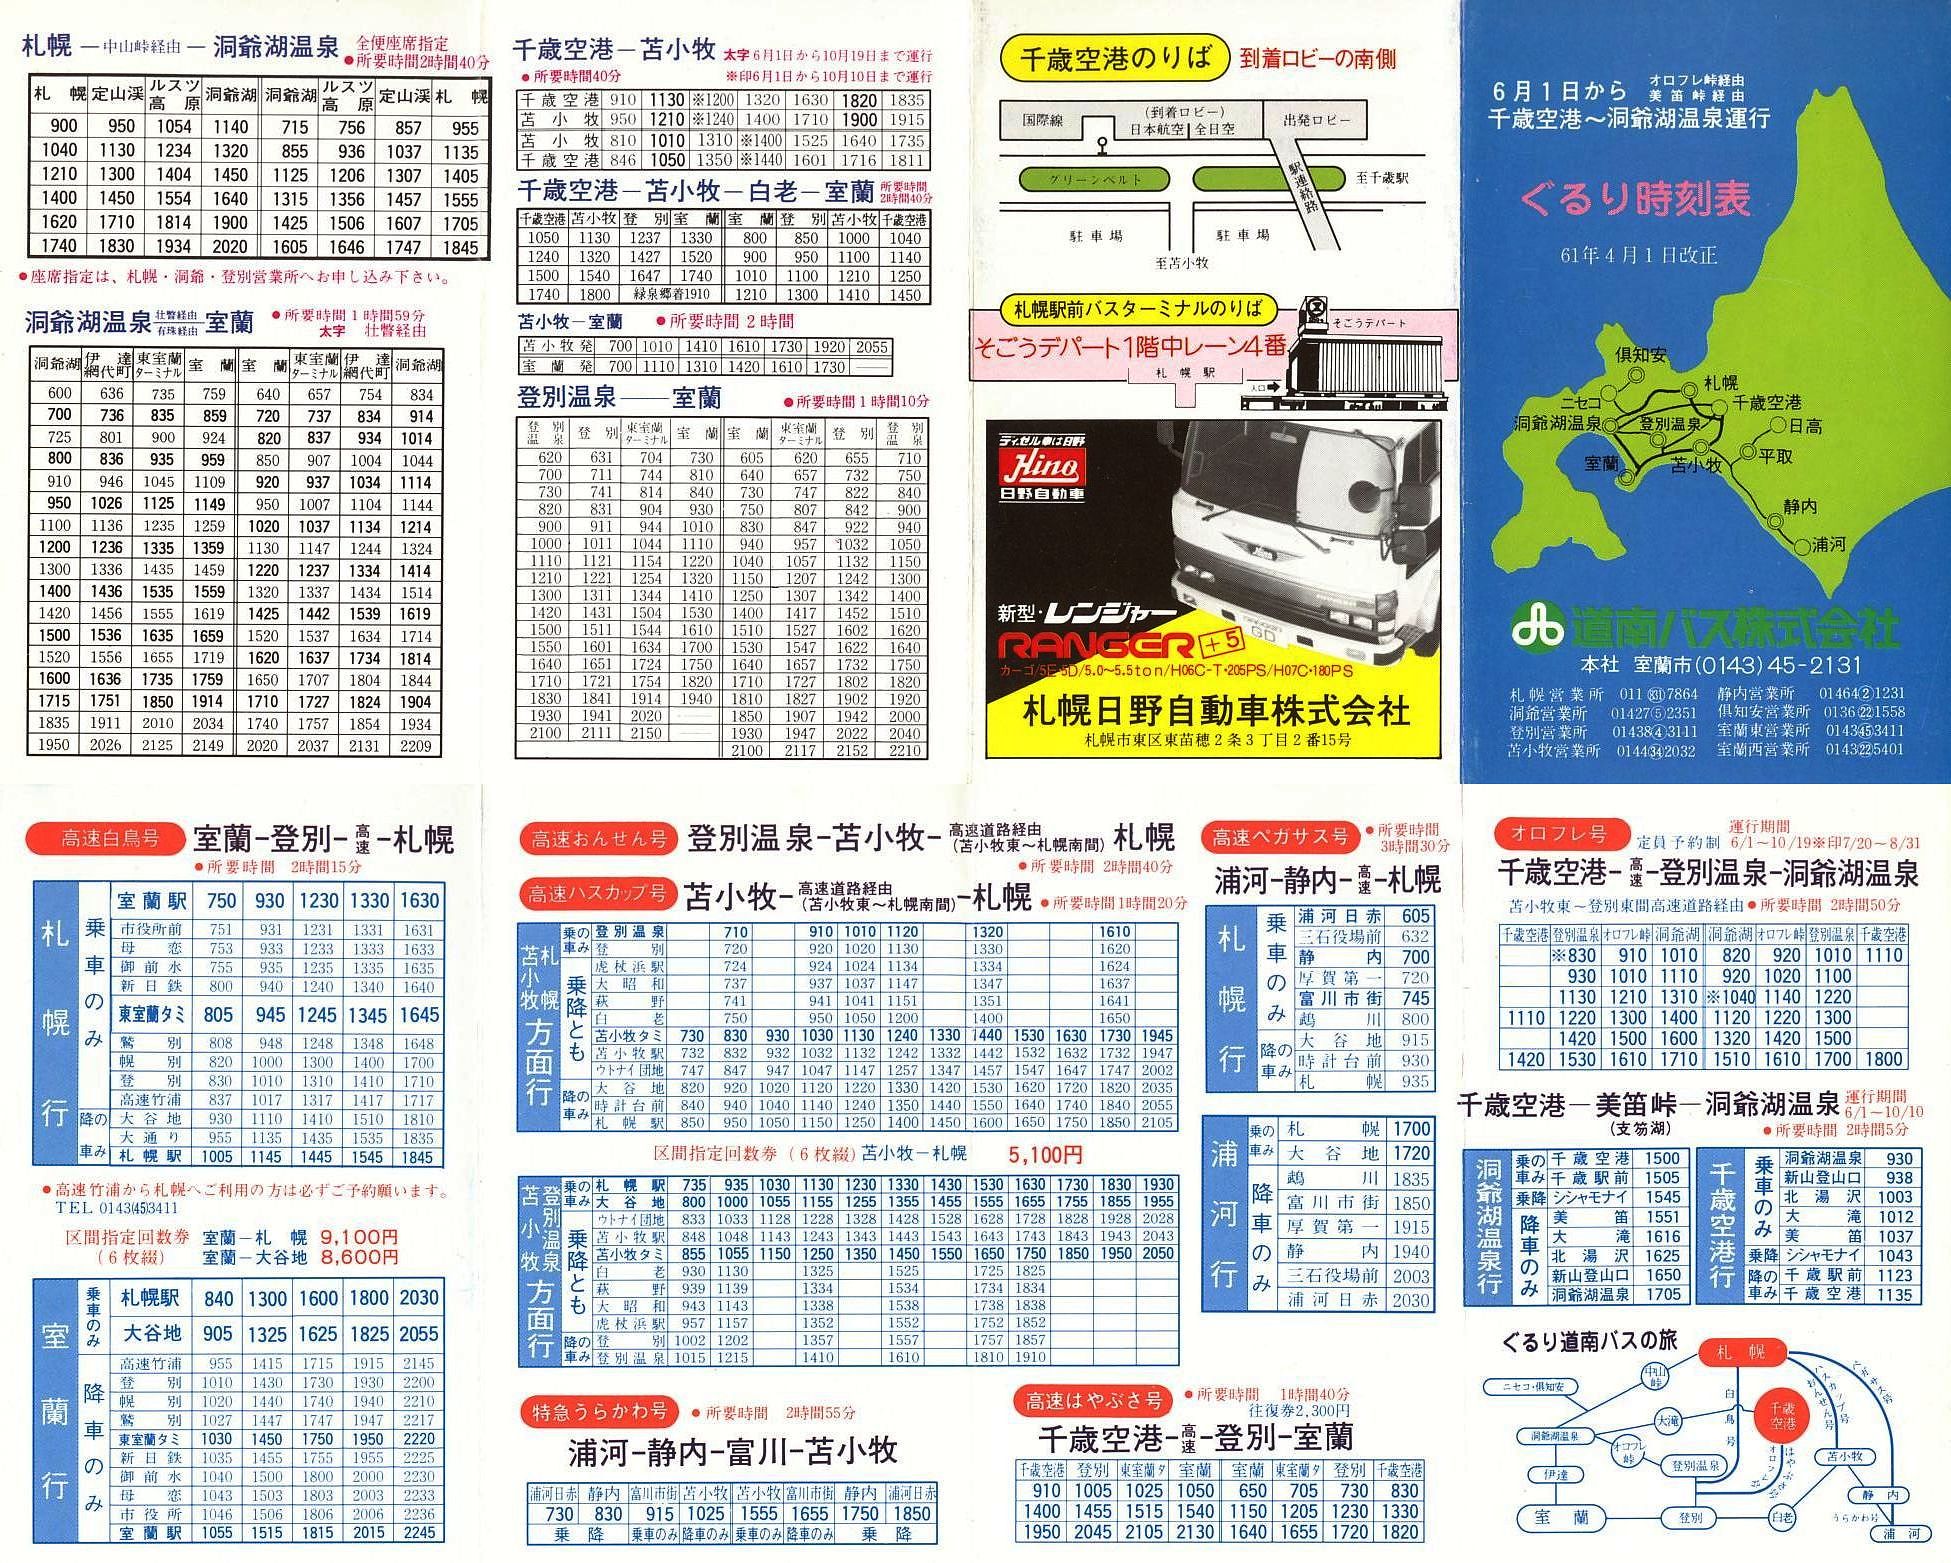 1986-06-01改正_道南バス_都市間時刻表(ぐるり時刻表)